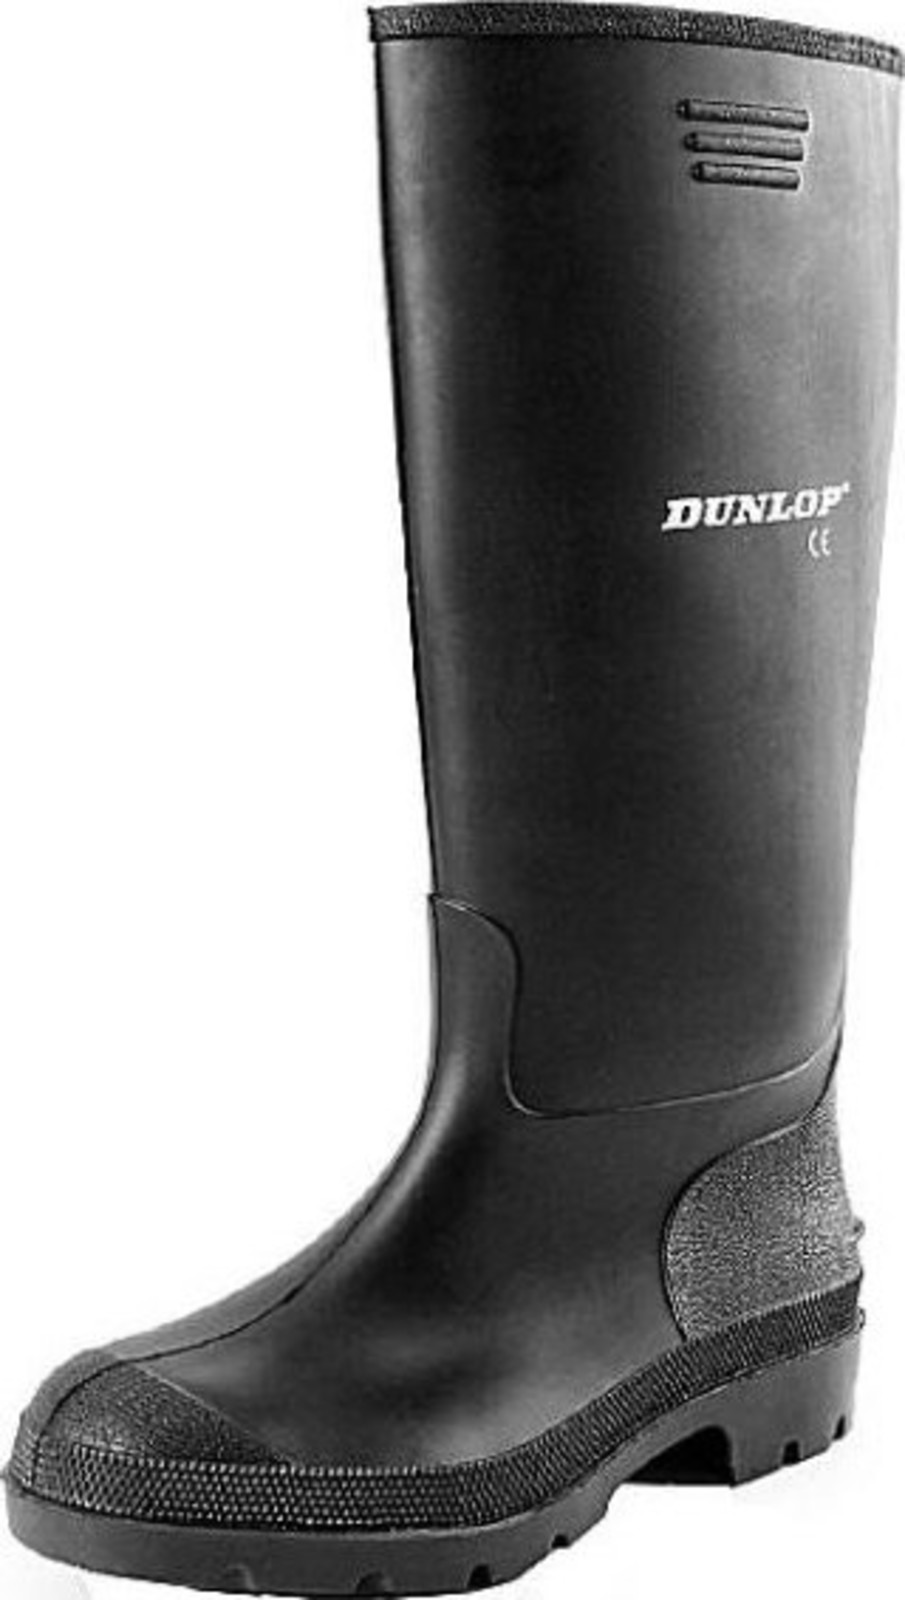 Gumáky Dunlop Preismeister PVC - veľkosť: 37, farba: čierna